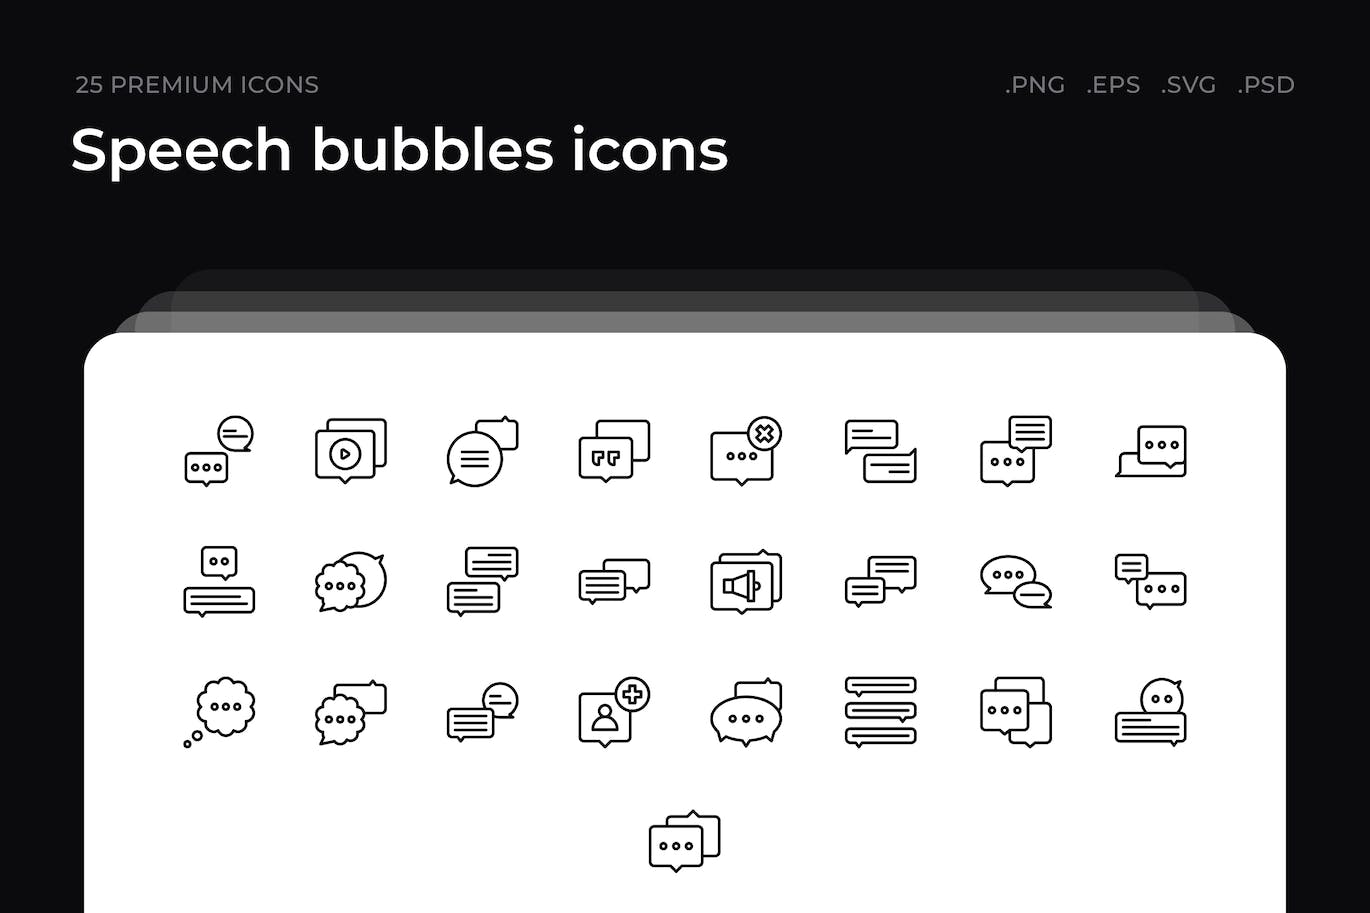 25枚语音气泡主题简约线条矢量图标 Speech bubbles icons 图标素材 第1张